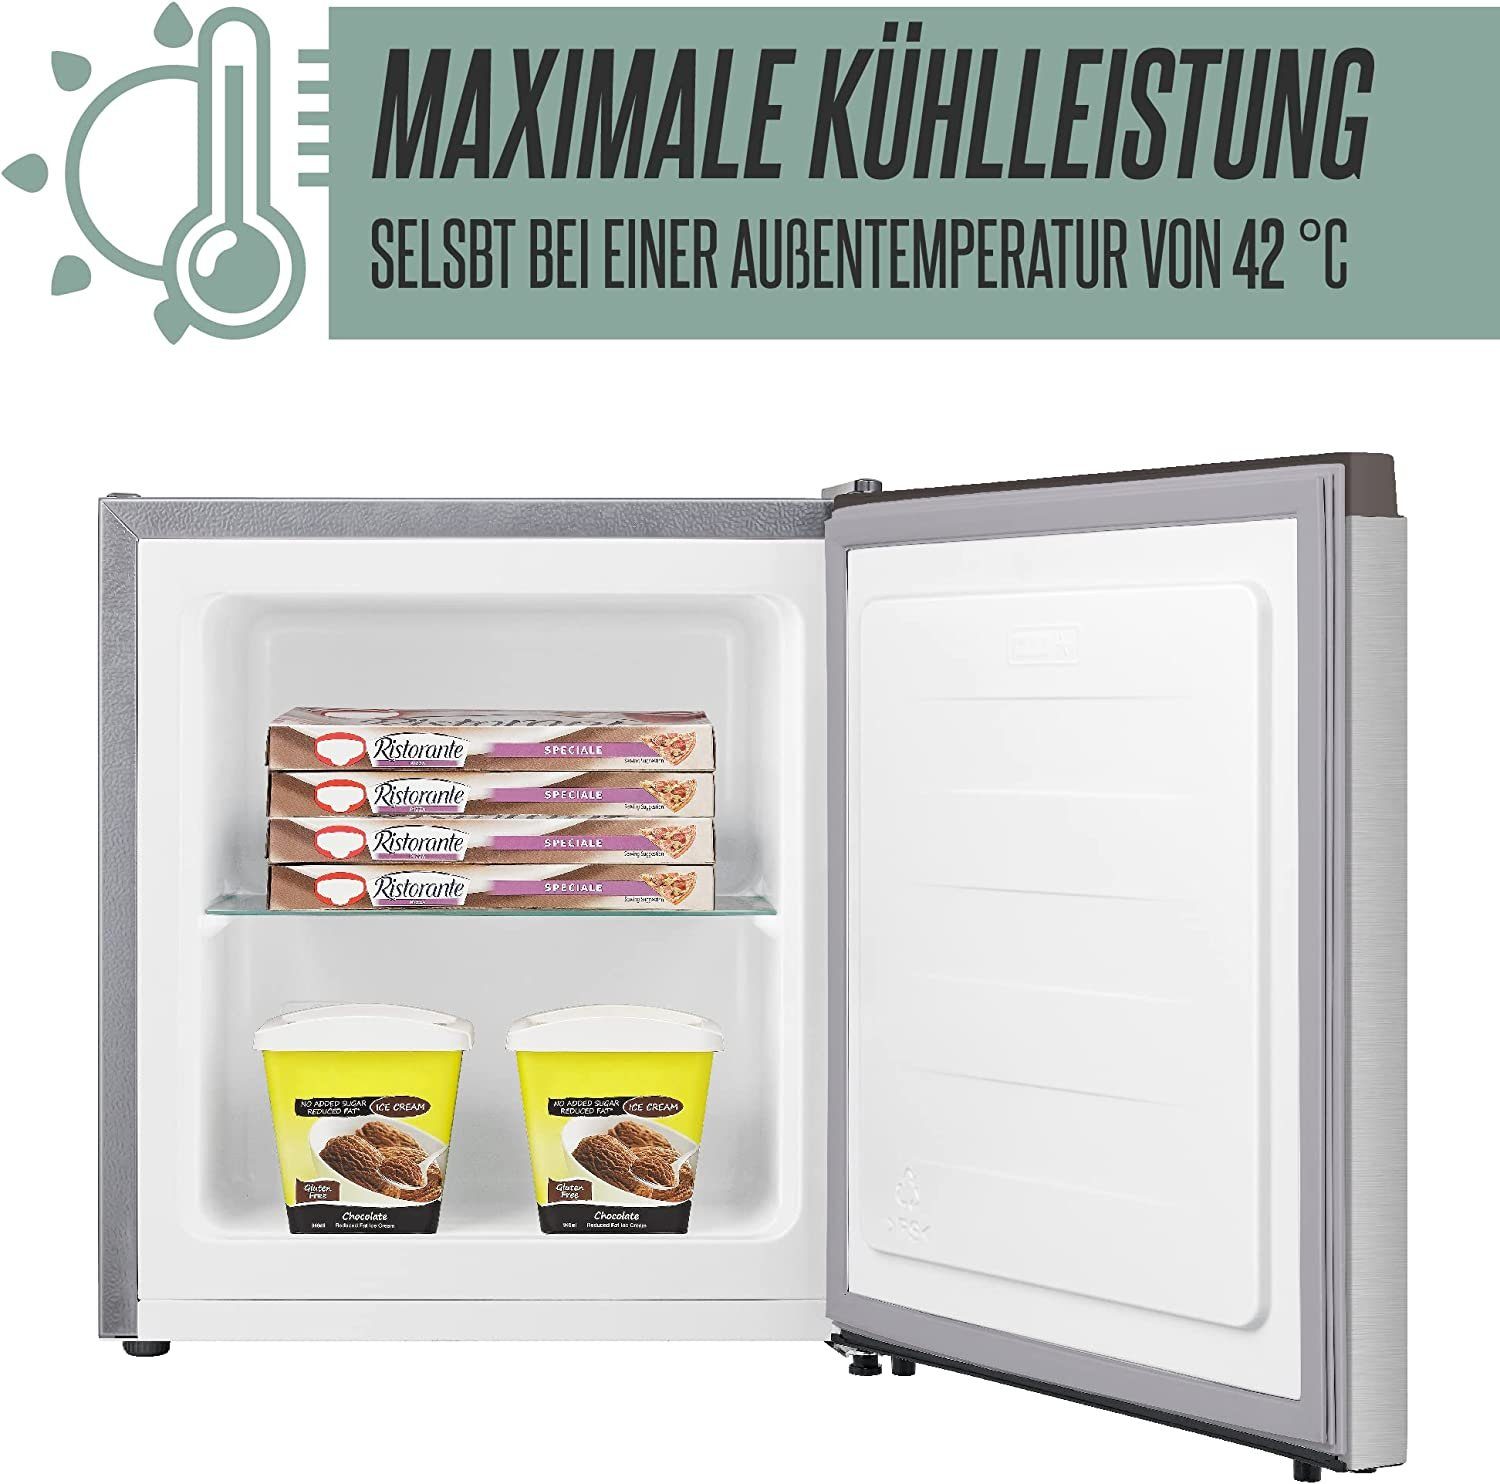 34L Gefrierbox, Mini HGB breit, Gefrierschrank Tiefkühlen Freezer hoch, Freezer perfekt 4088, 51 44 Heinrich´s Edelstahl 39db, cm cm